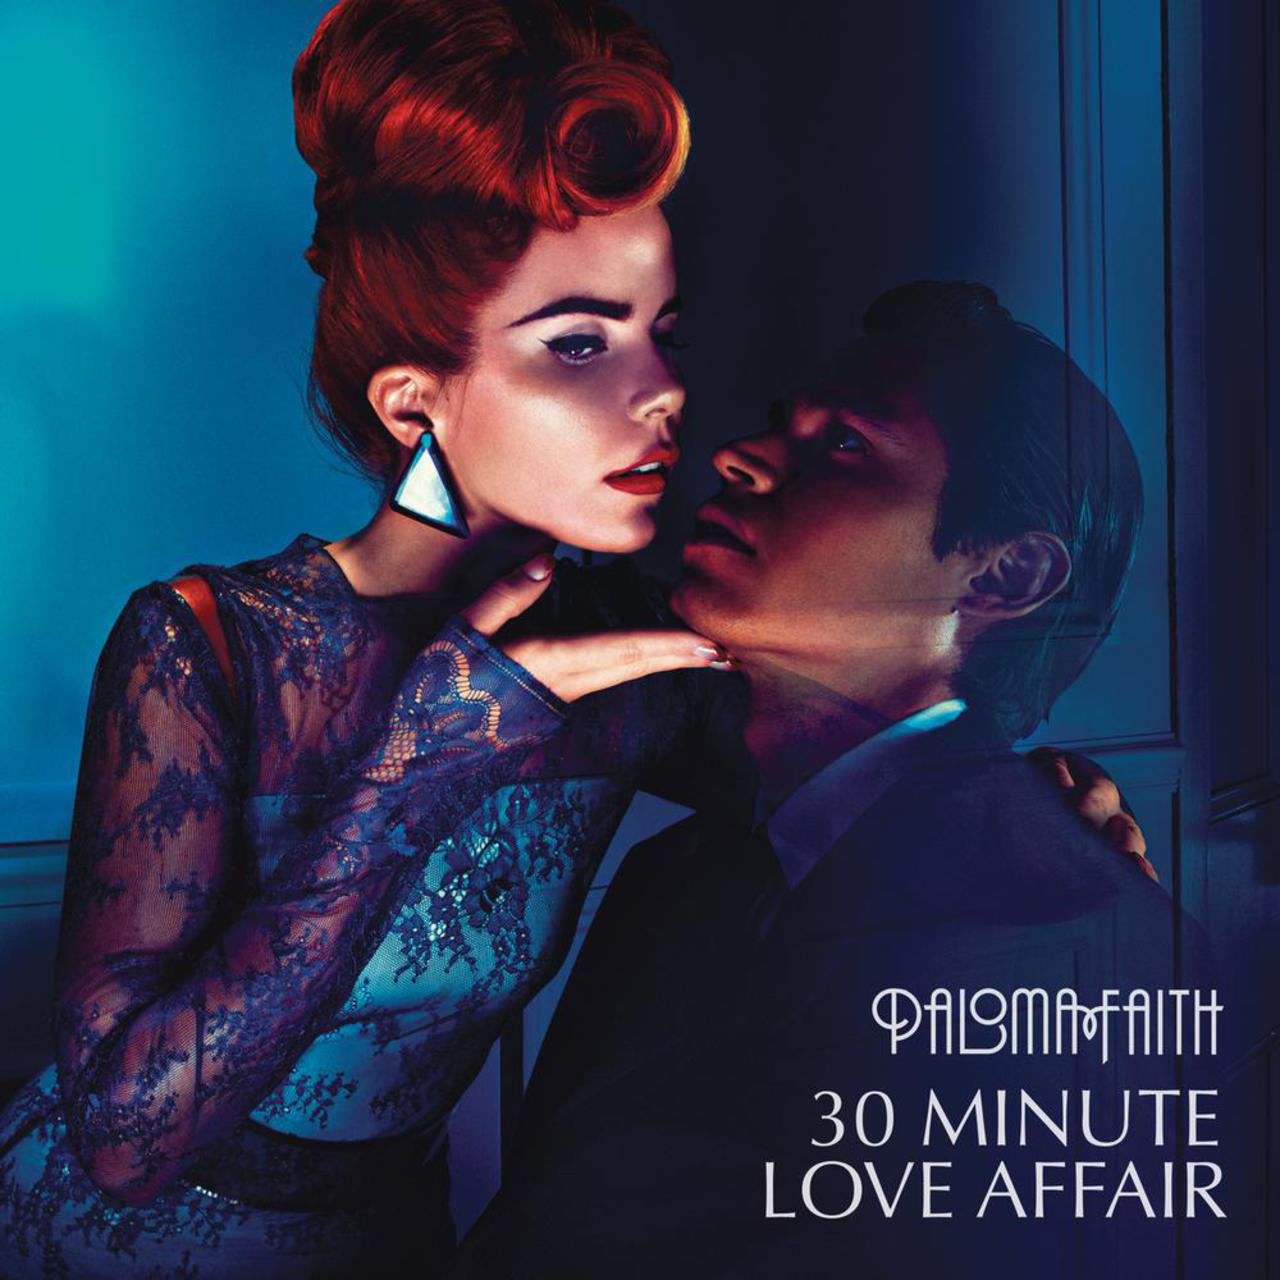 Paloma-Faith-30-Minute-Love-Affair-2012-1280x1280.png